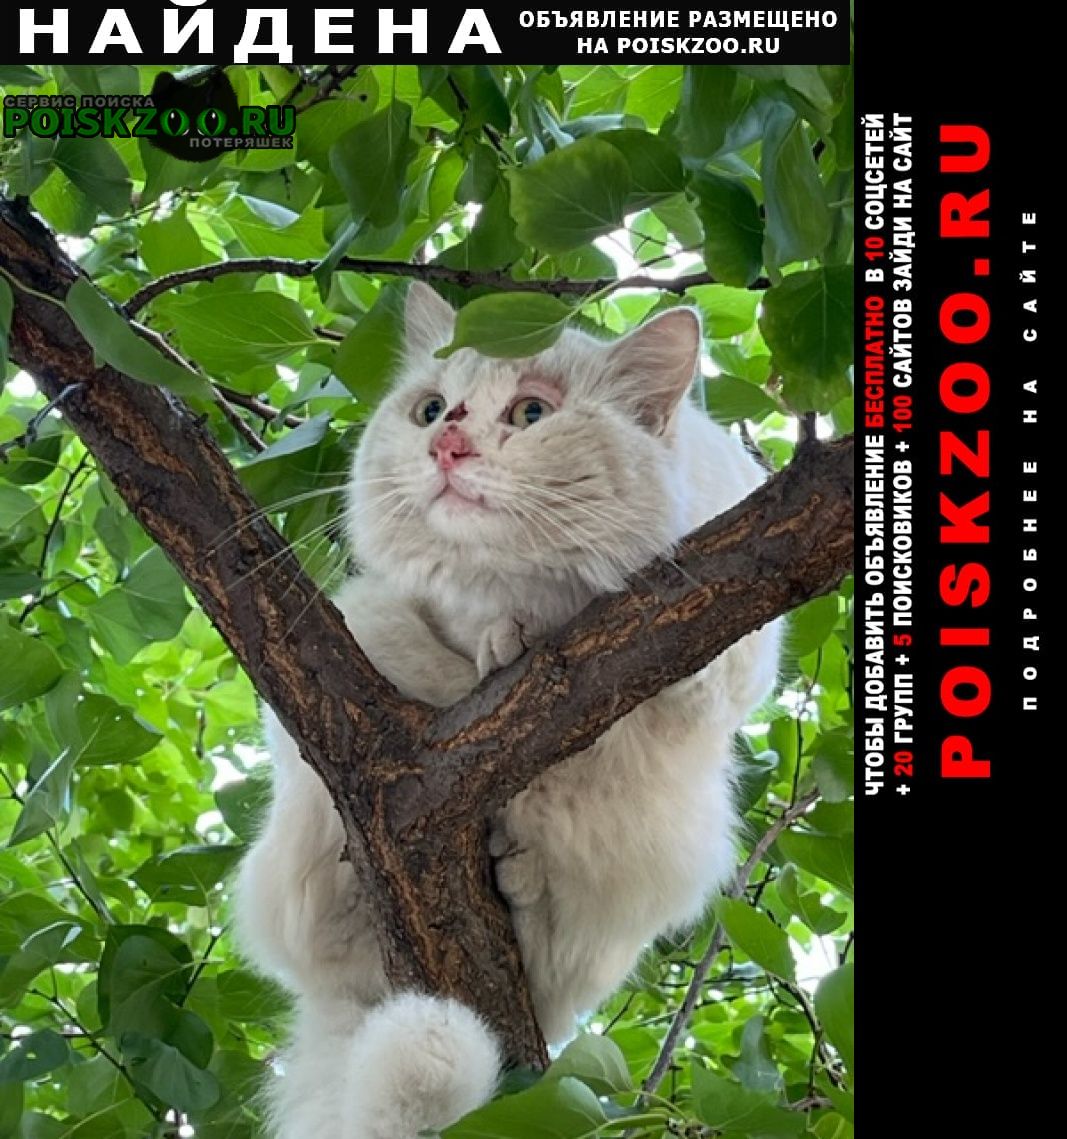 Нижний Новгород Найден кот волжская набережная 9